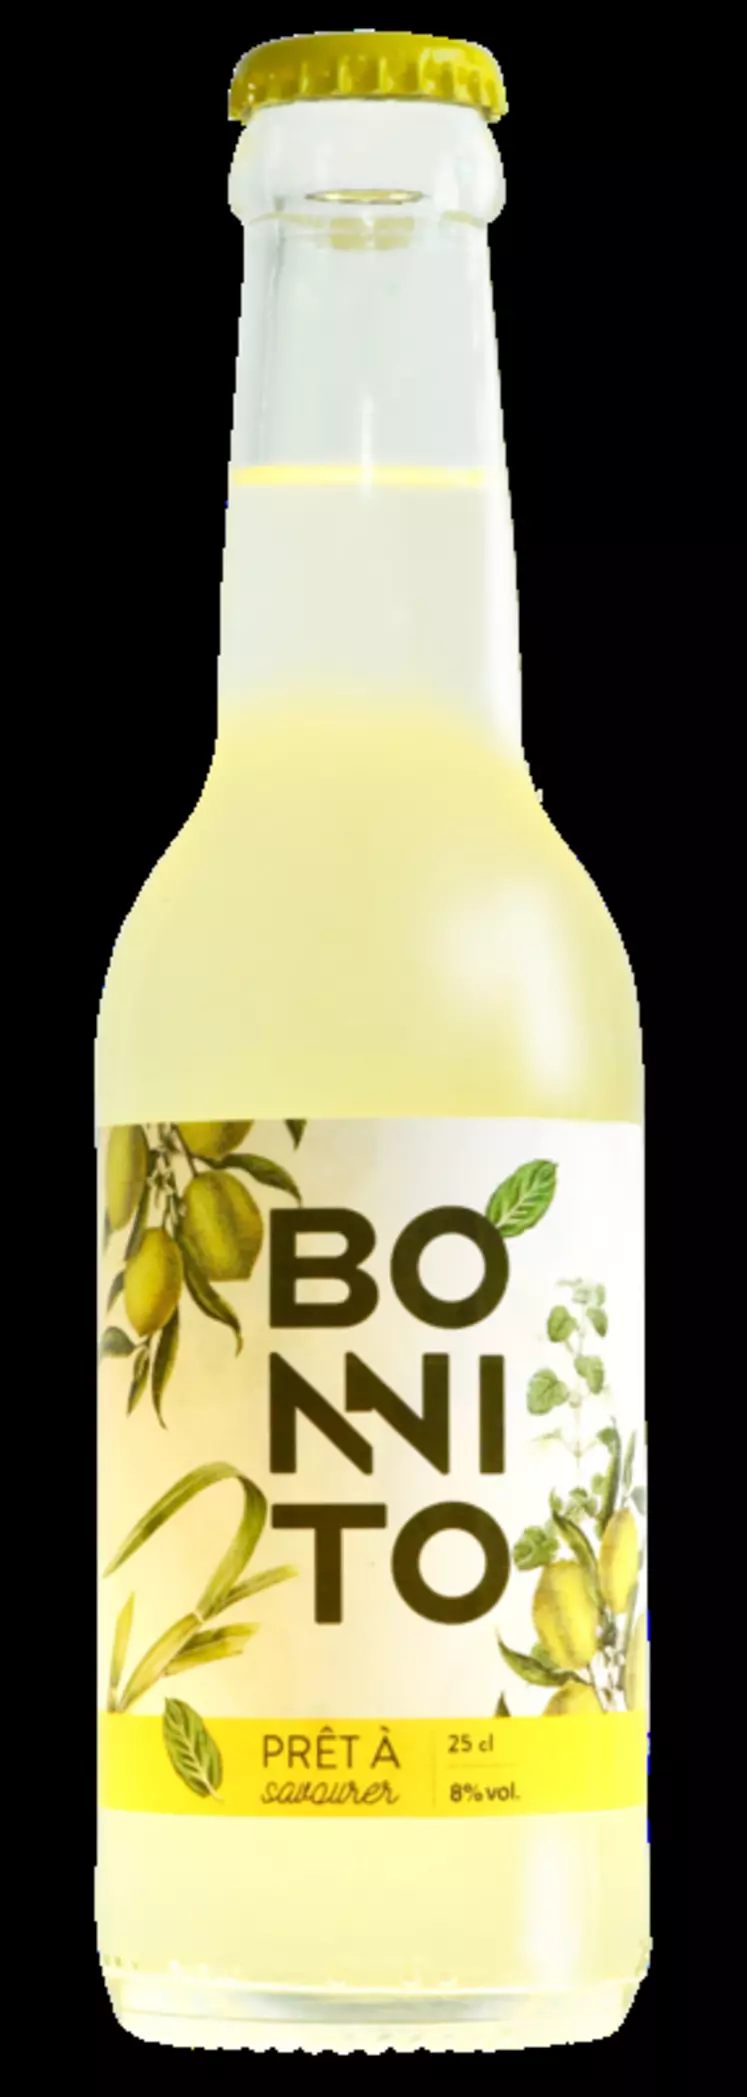 Le cocktail Bonnito, élaboré avec environ 65 % de vin blanc, est conditionné en bouteilles de 25 cl et titre 8 % vol.